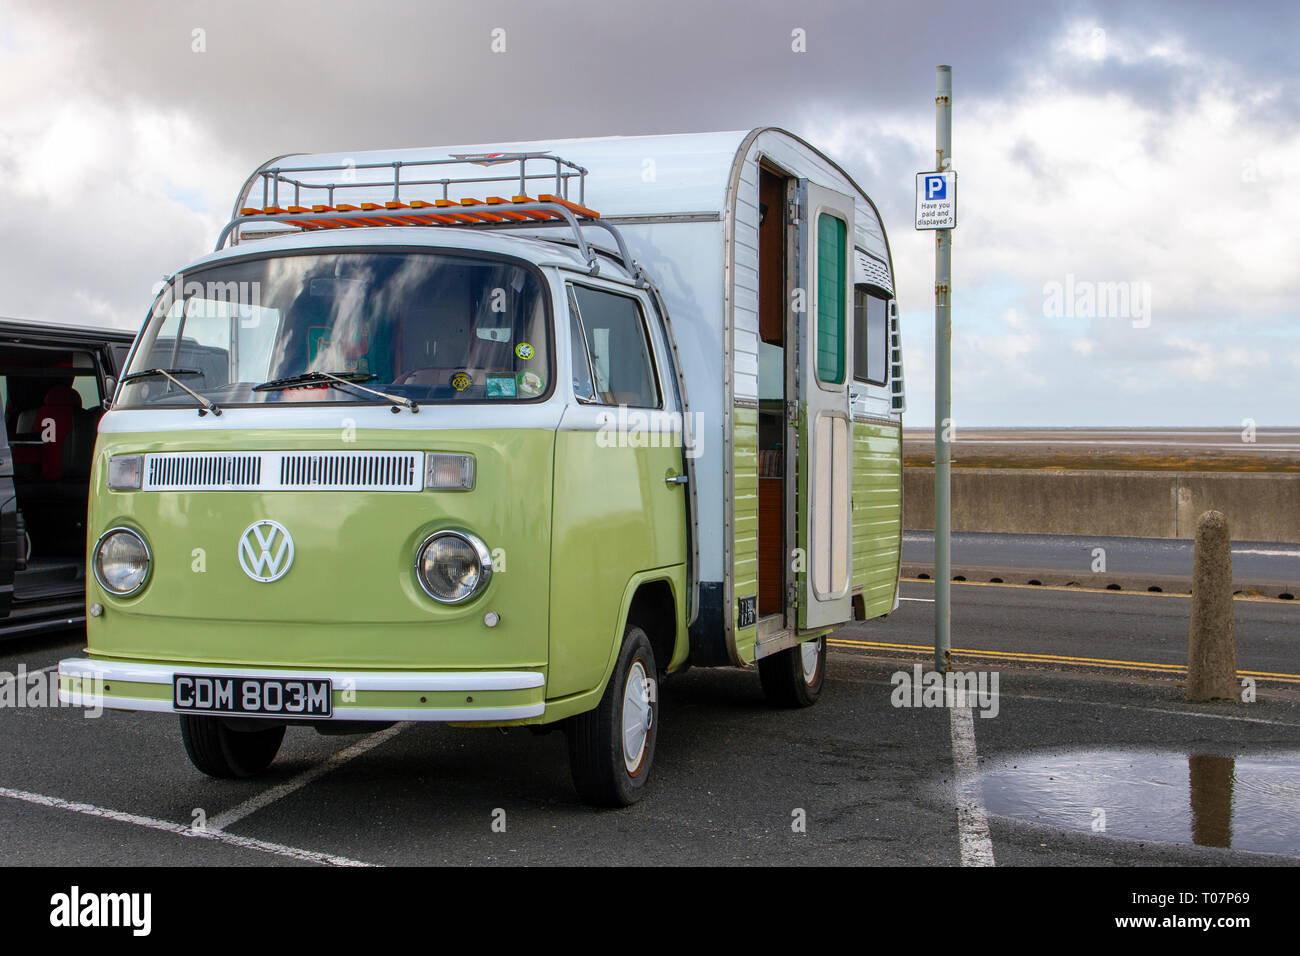 1974 70s VW Volkswagen Green White Jurgens Autovilla 2000cc benzina LCV; Caravan Motorhomes, camper sulle strade della Gran Bretagna, RV veicolo per il tempo libero, vacanze in famiglia, vacanze caravanette, vacanze caravan Touring, Conversioni furgoni anni '70, Vanagon autohomit, LIFE on the Road, UK Foto Stock